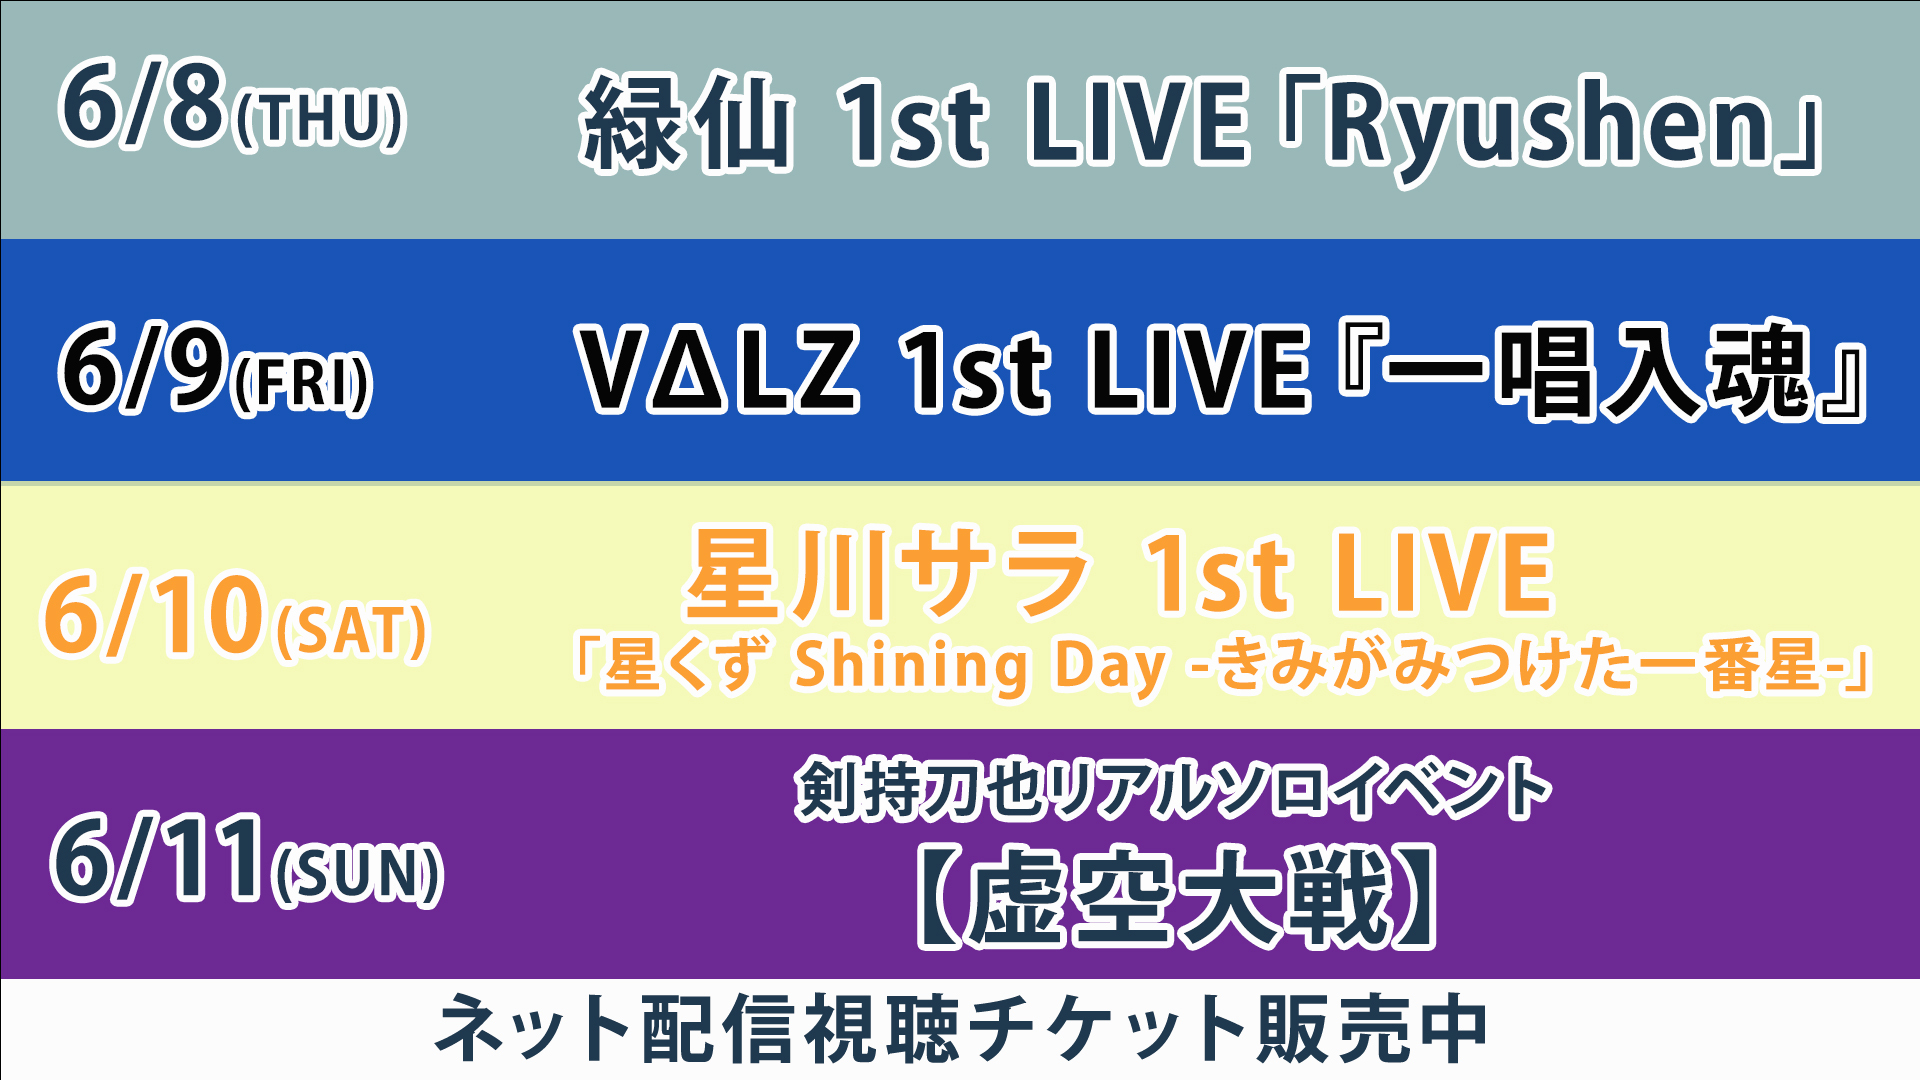 緑仙 1st LIVE「Ryushen」ニコ生視聴チケット